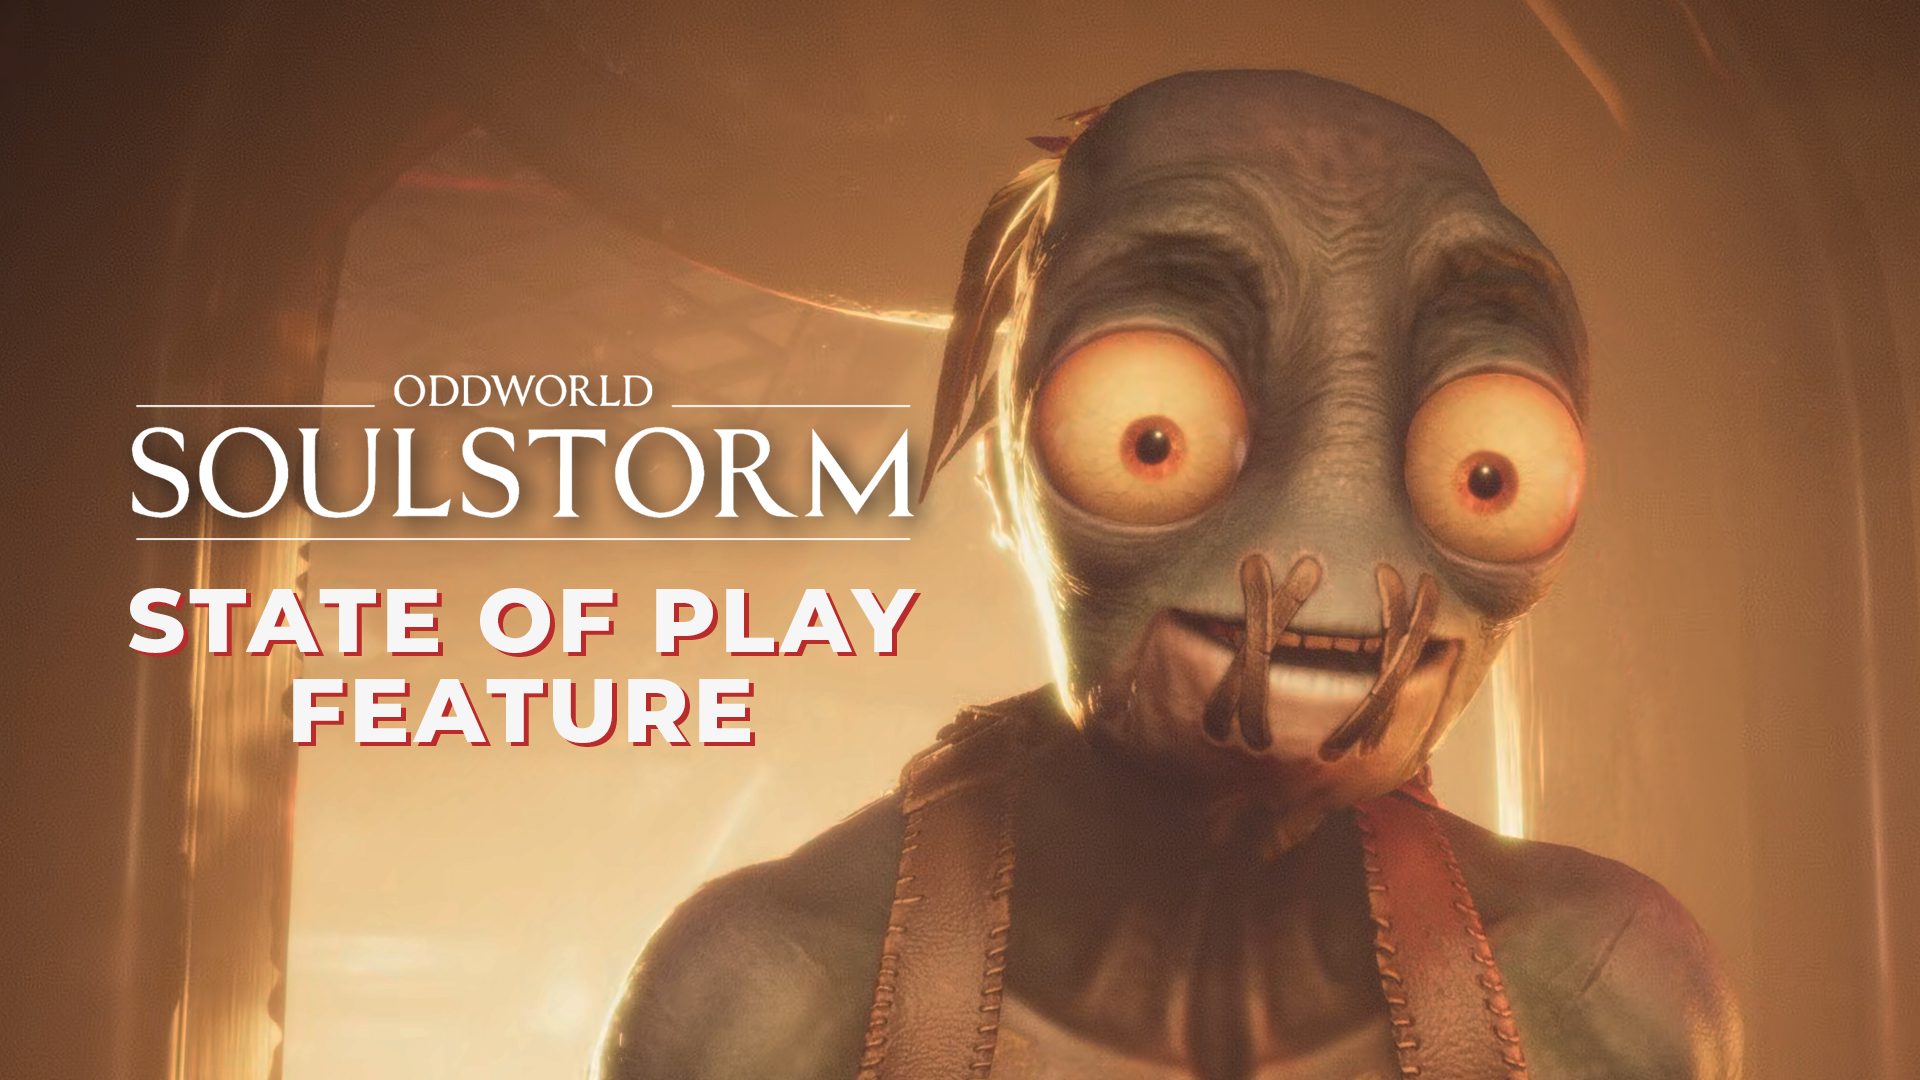 Oddworld: Soulstorm arrive le 6 avril sur PS4 et PS5